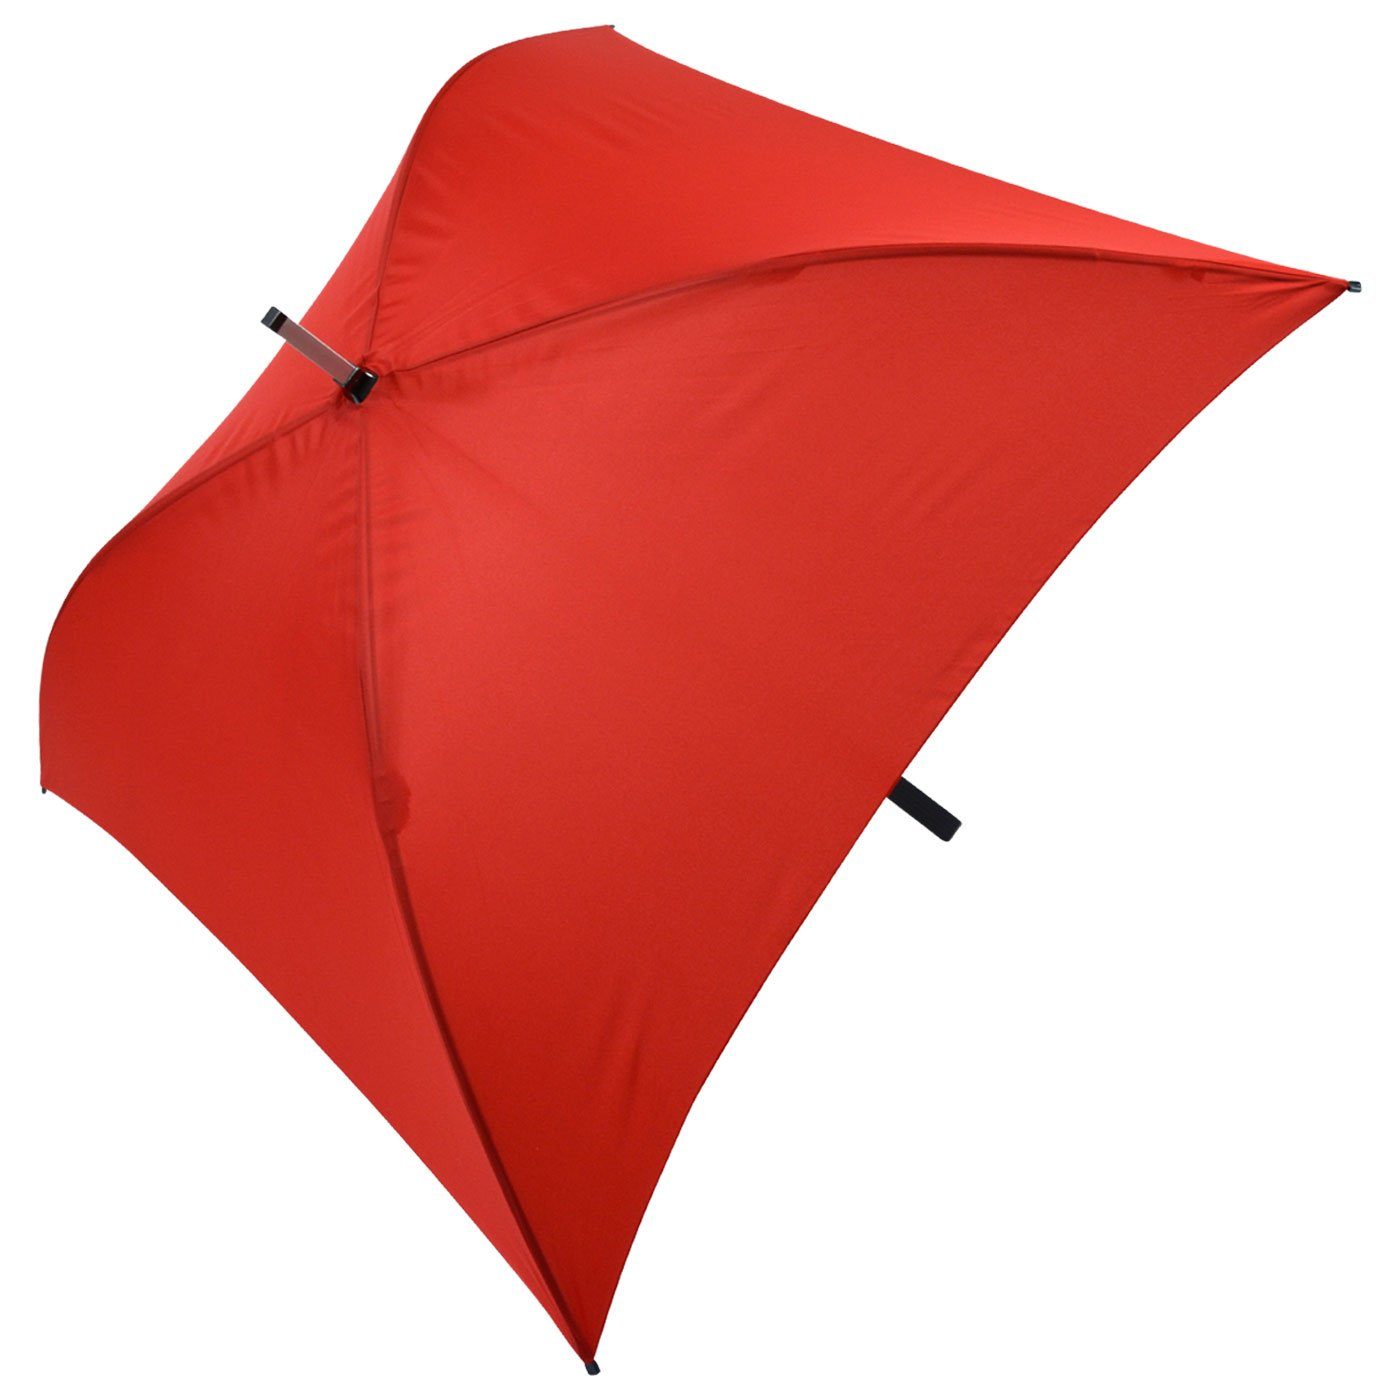 Impliva Langregenschirm All quadratischer Regenschirm ganz Regenschirm, voll rot besondere Square® der